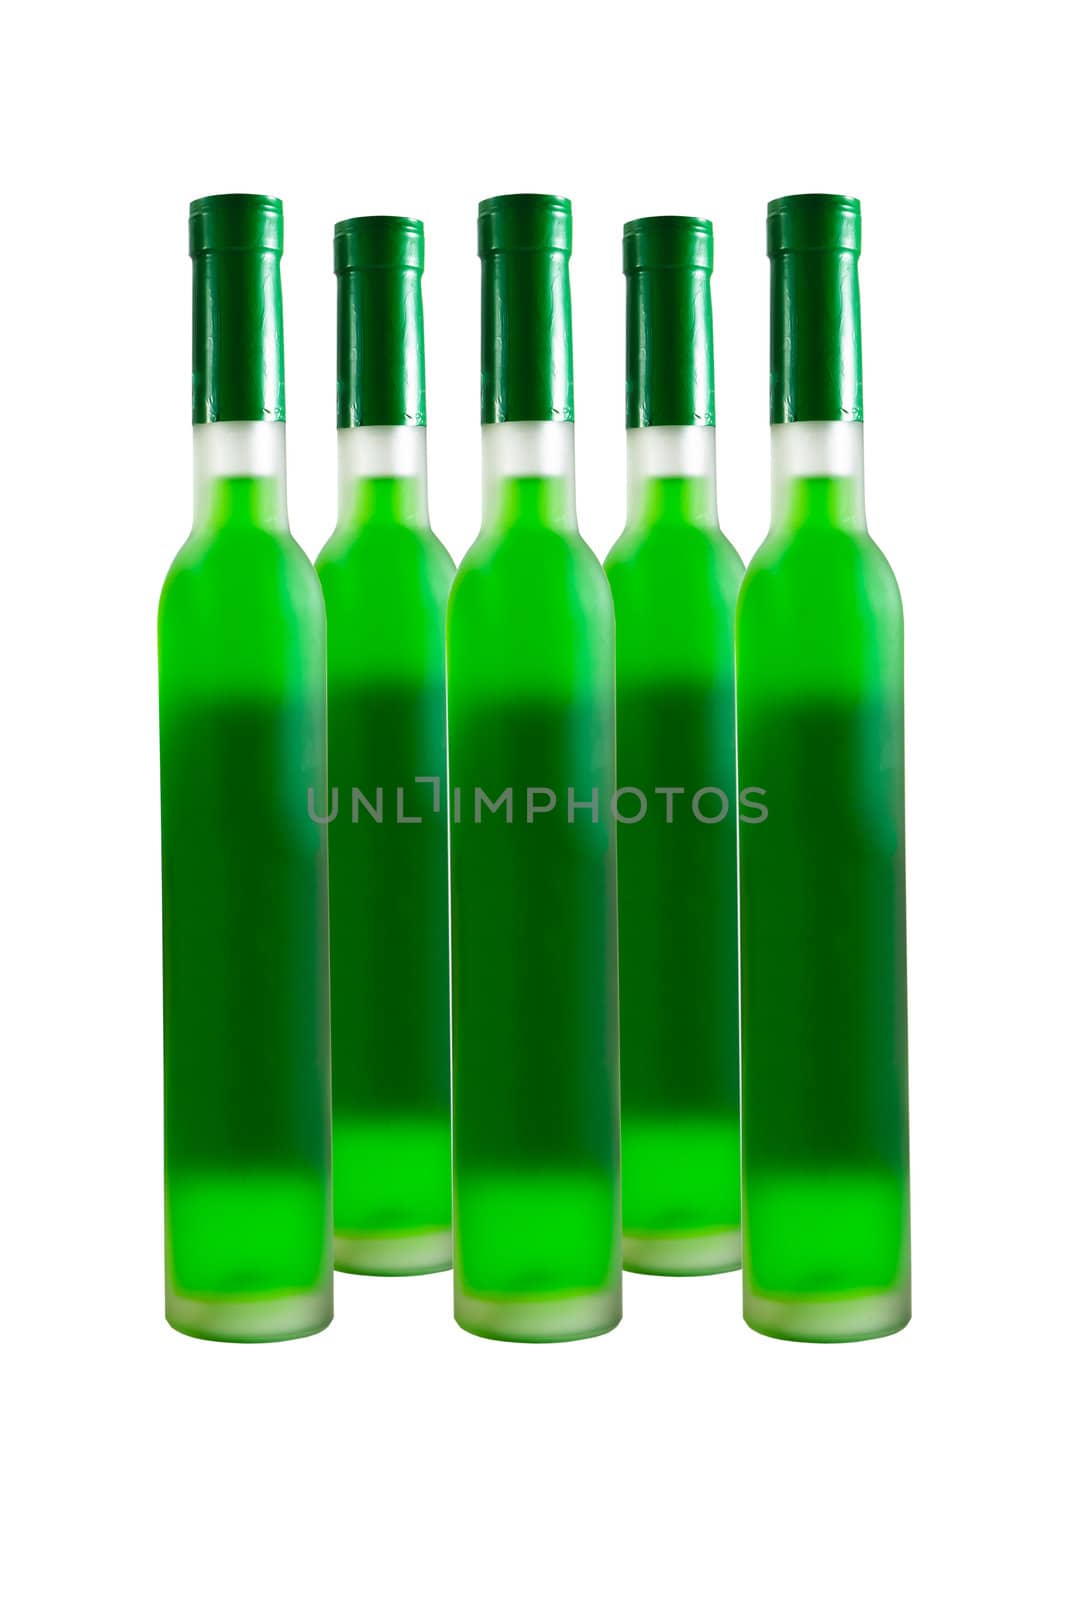 Green wine bottle by stoonn